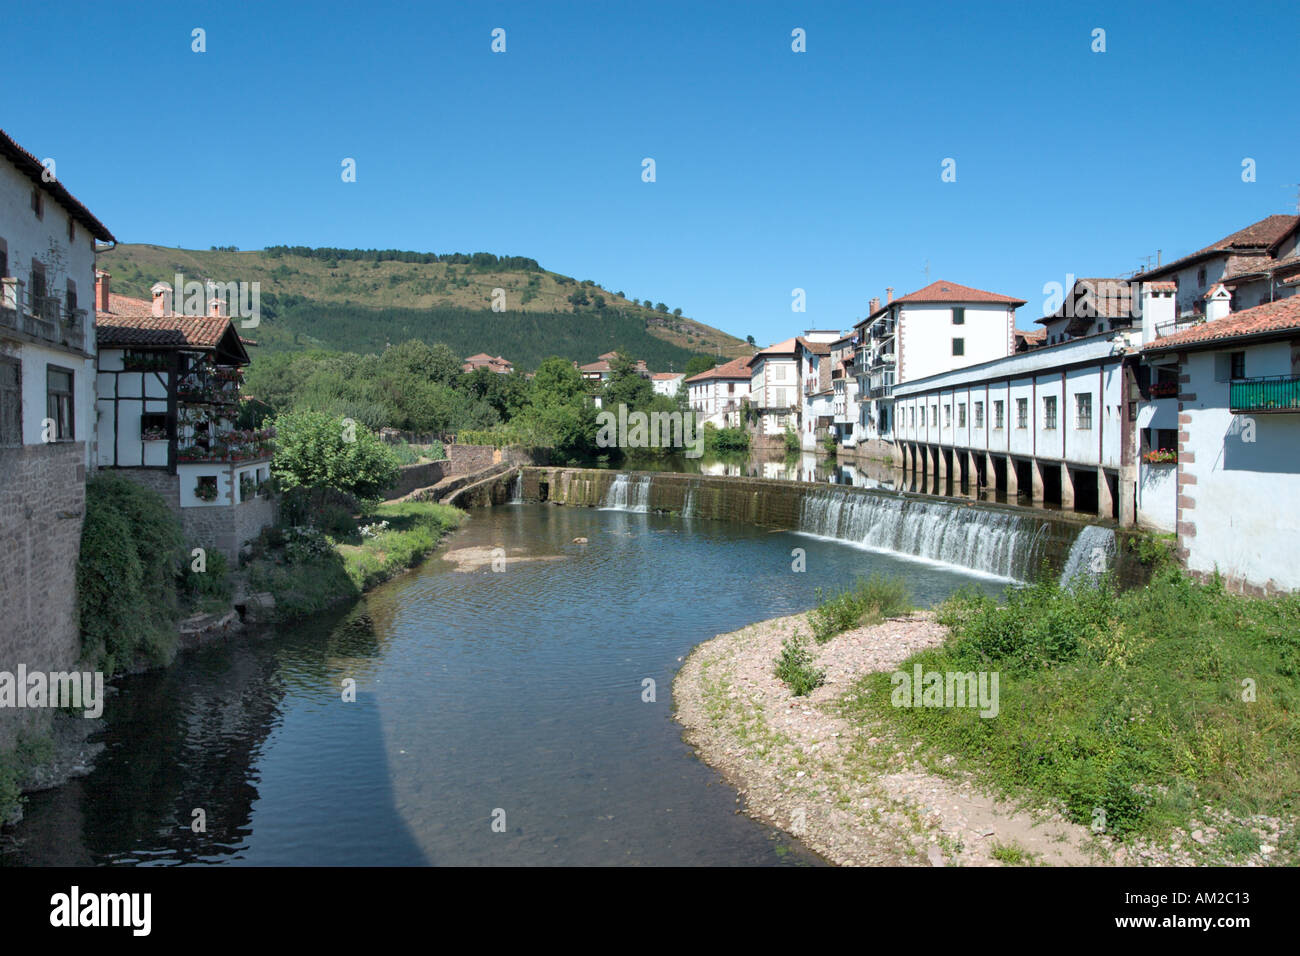 River Baztan, Elizondo, Navarra, Basque Country, Spain Stock Photo